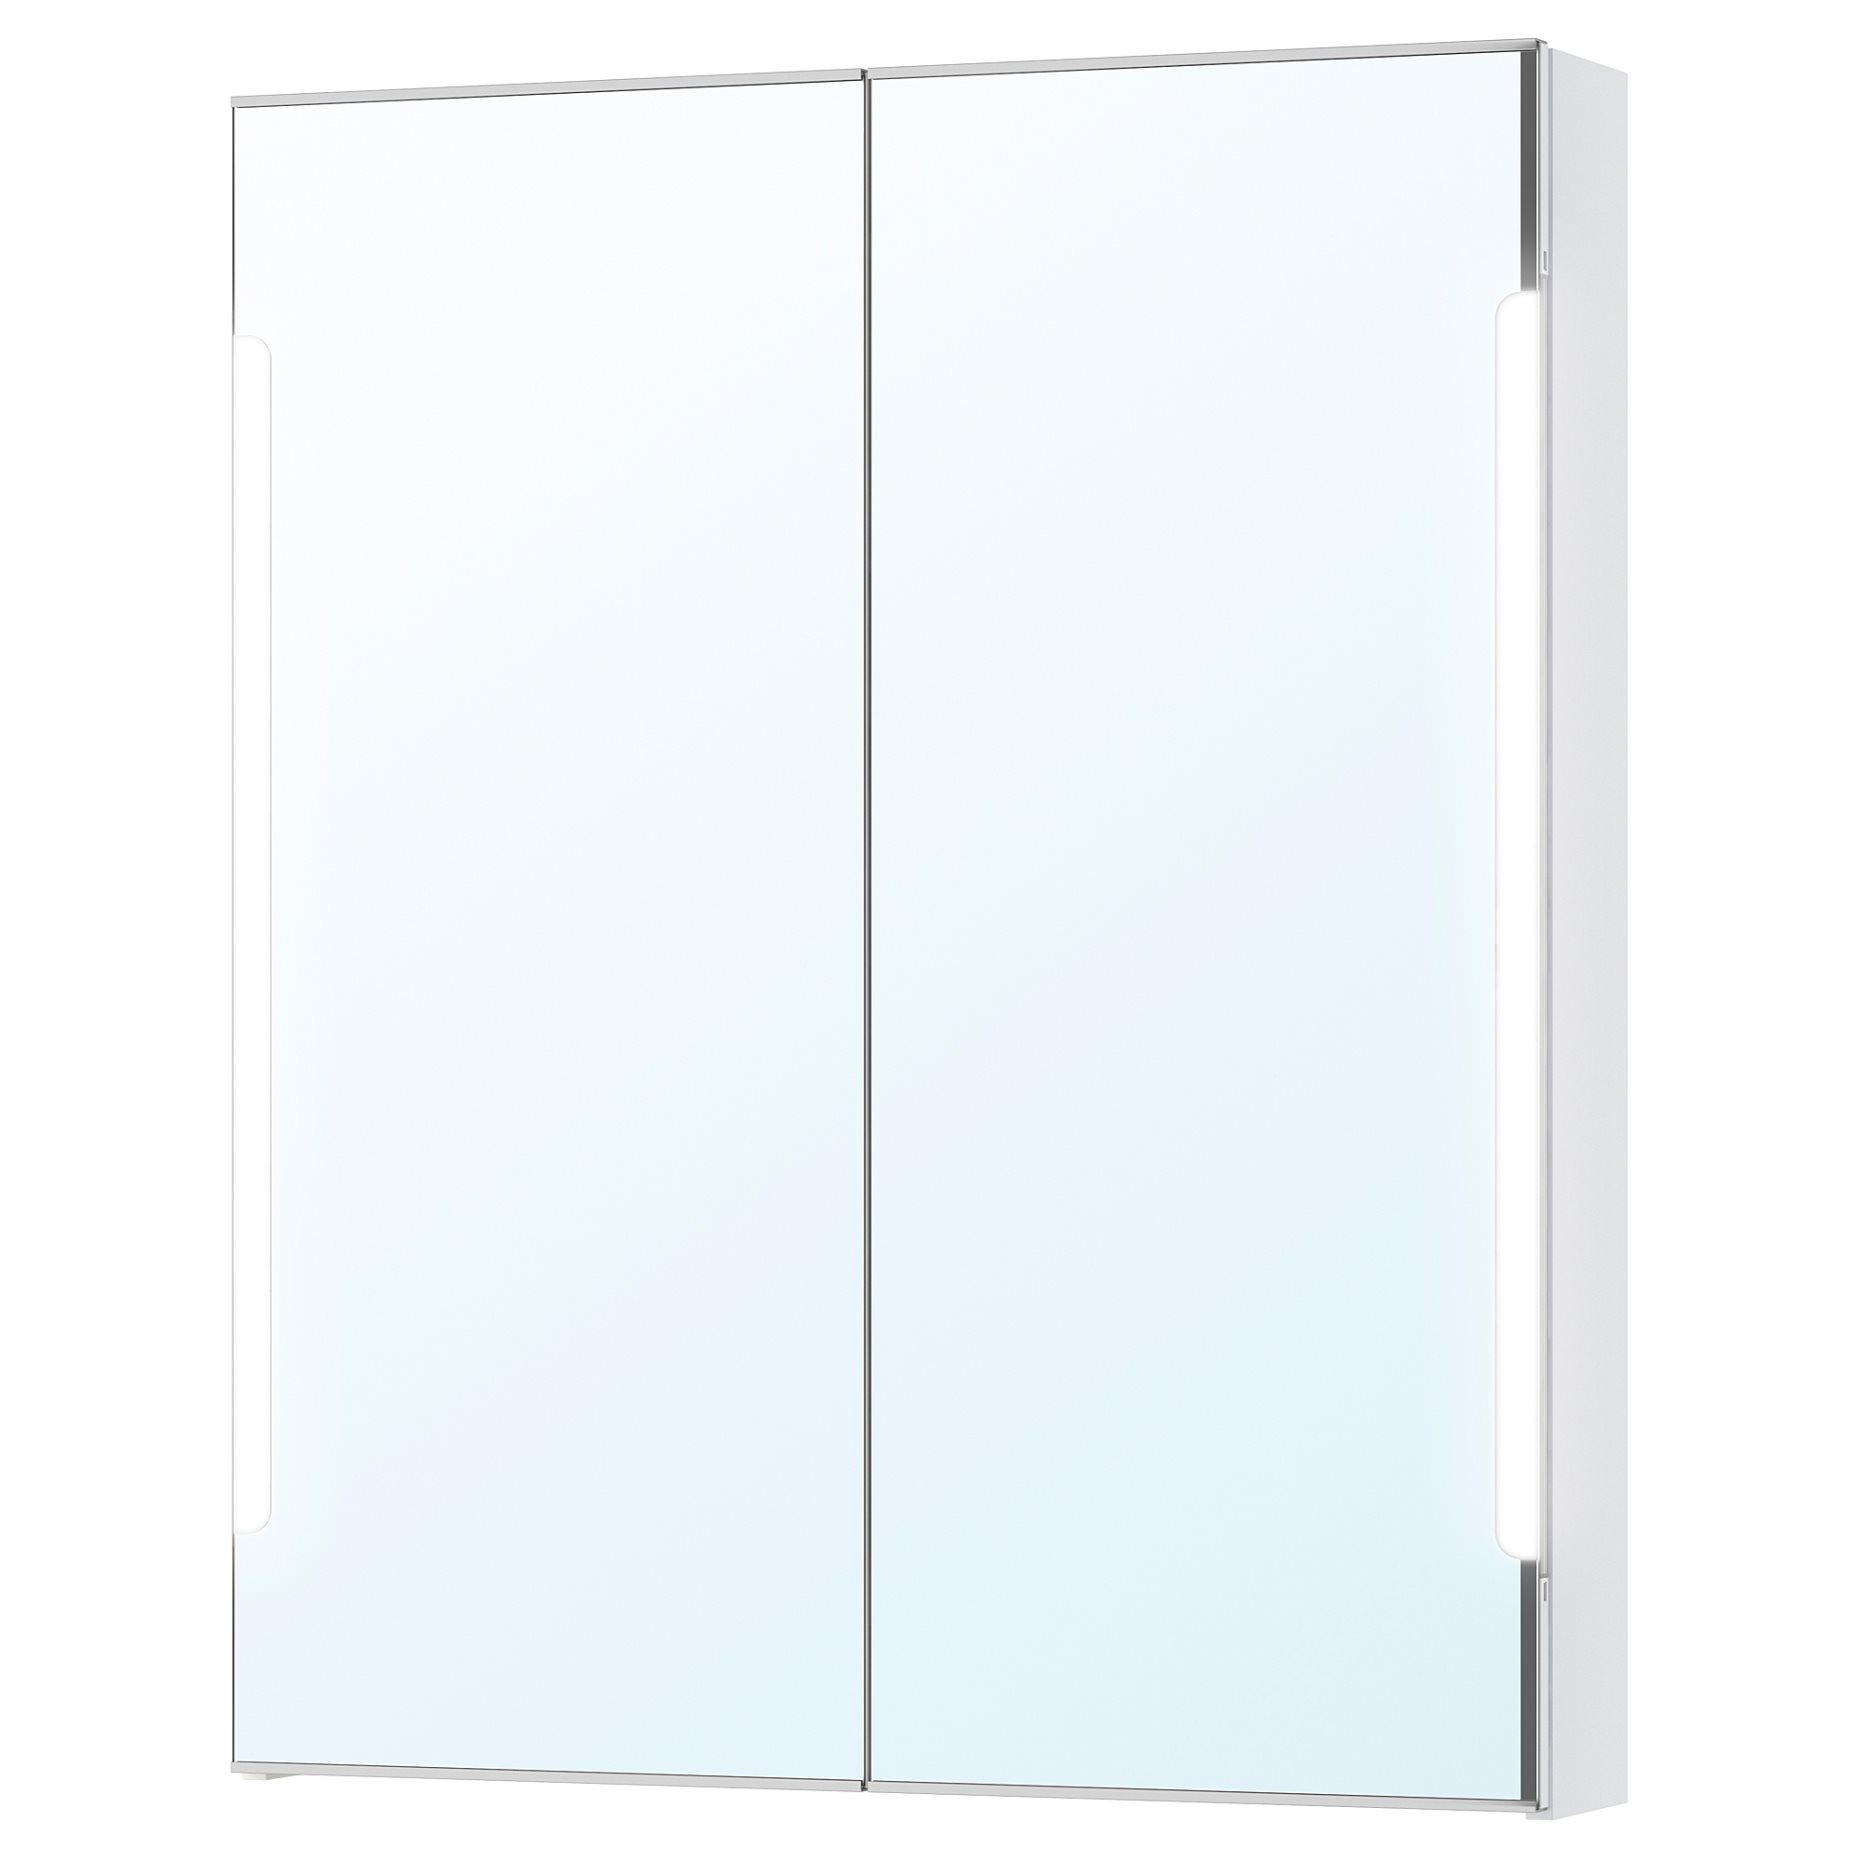 STORJORM, mirror cabinet 2 door/built-in lighting, 202.481.23